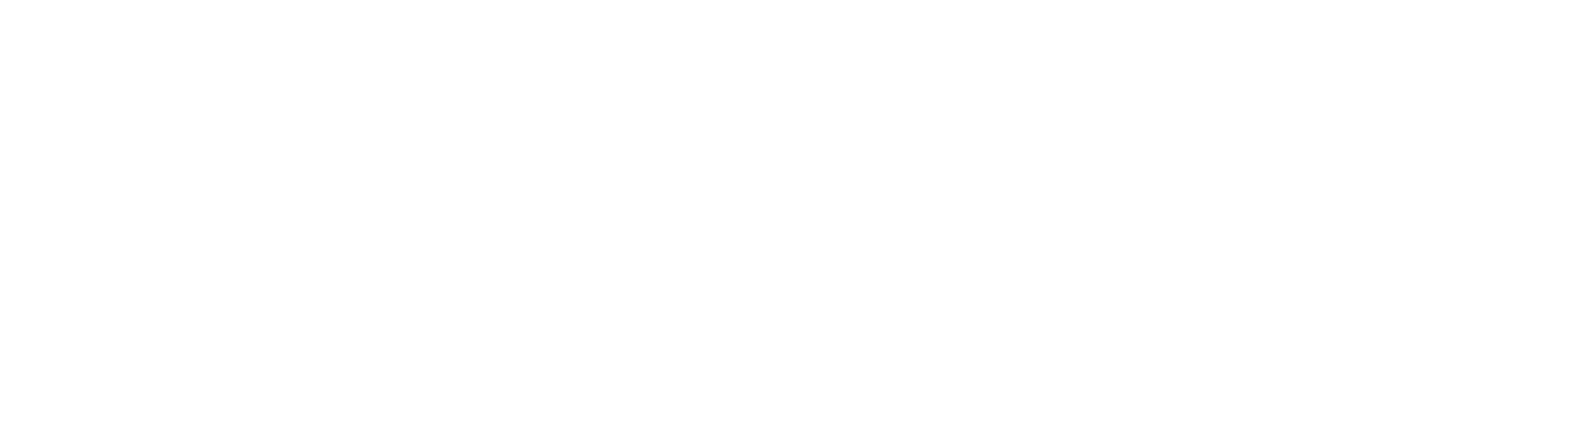 Kite Realty Logo groß für dunkle Hintergründe (transparentes PNG)